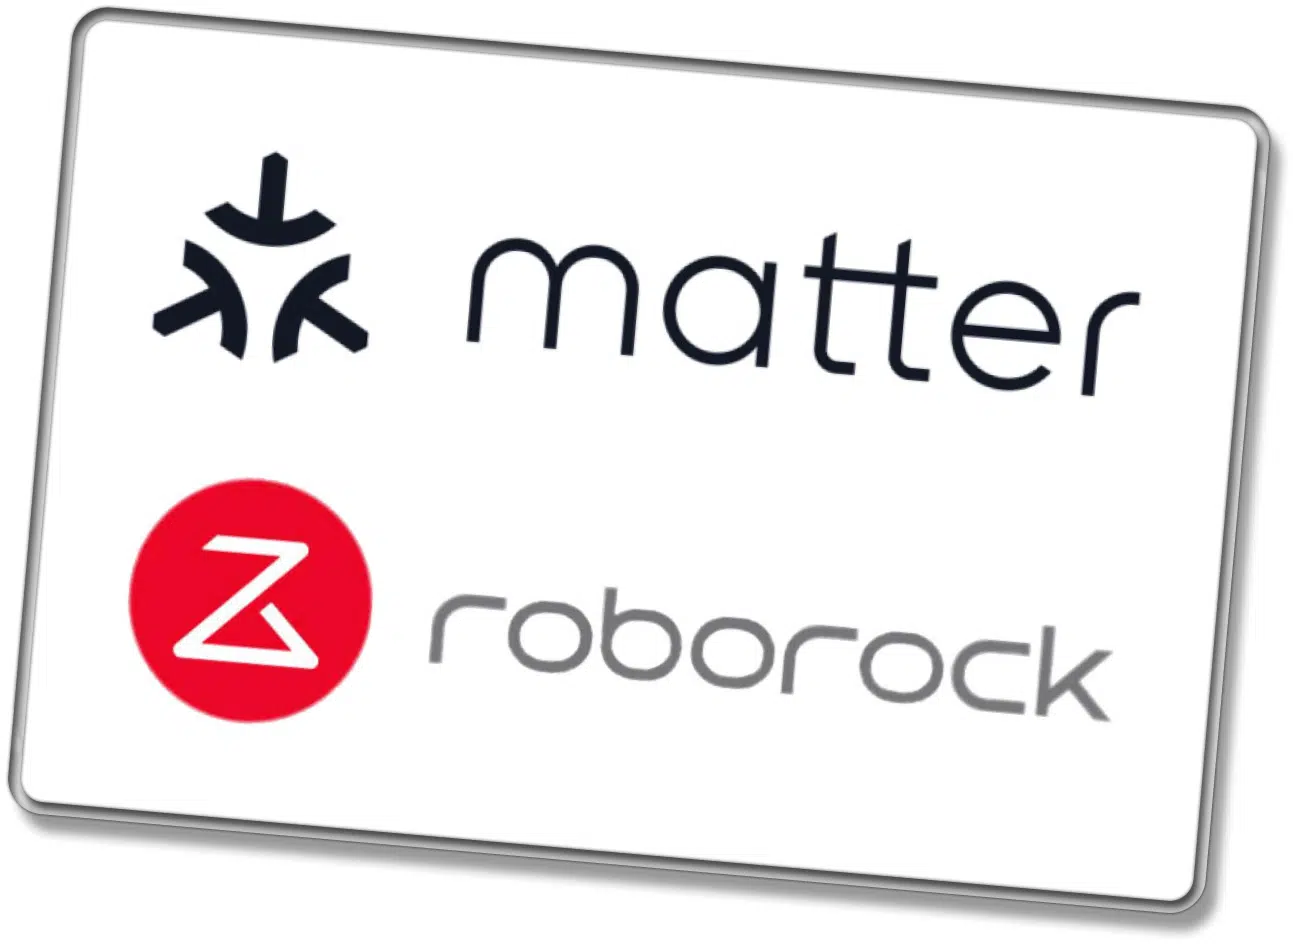 Roborock Matter